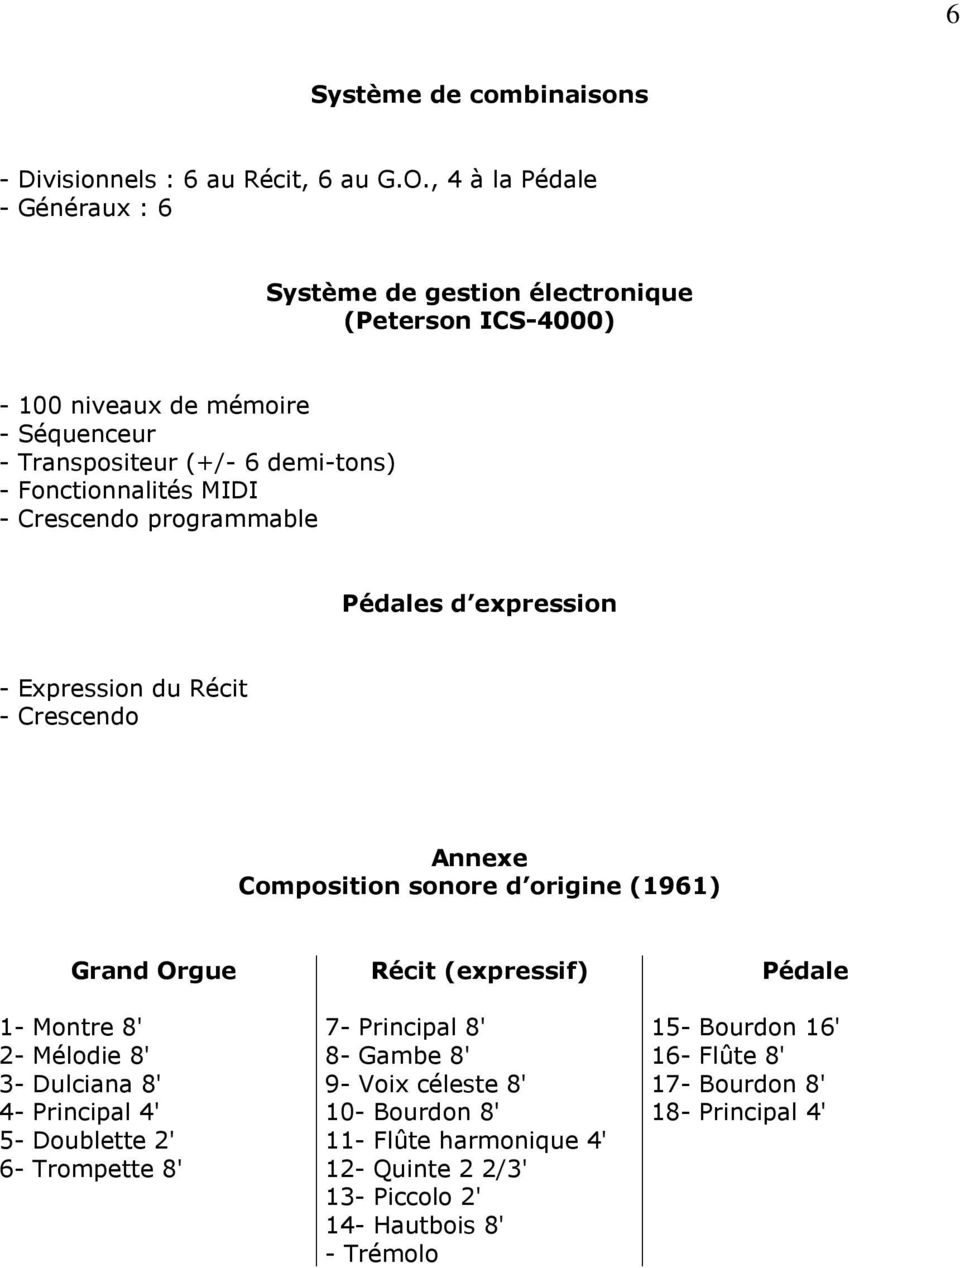 MIDI - Crescendo programmable Pédales d expression - Expression du Récit - Crescendo Annexe Composition sonore d origine (1961) Grand Orgue 1- Montre 8' 2- Mélodie 8' 3-